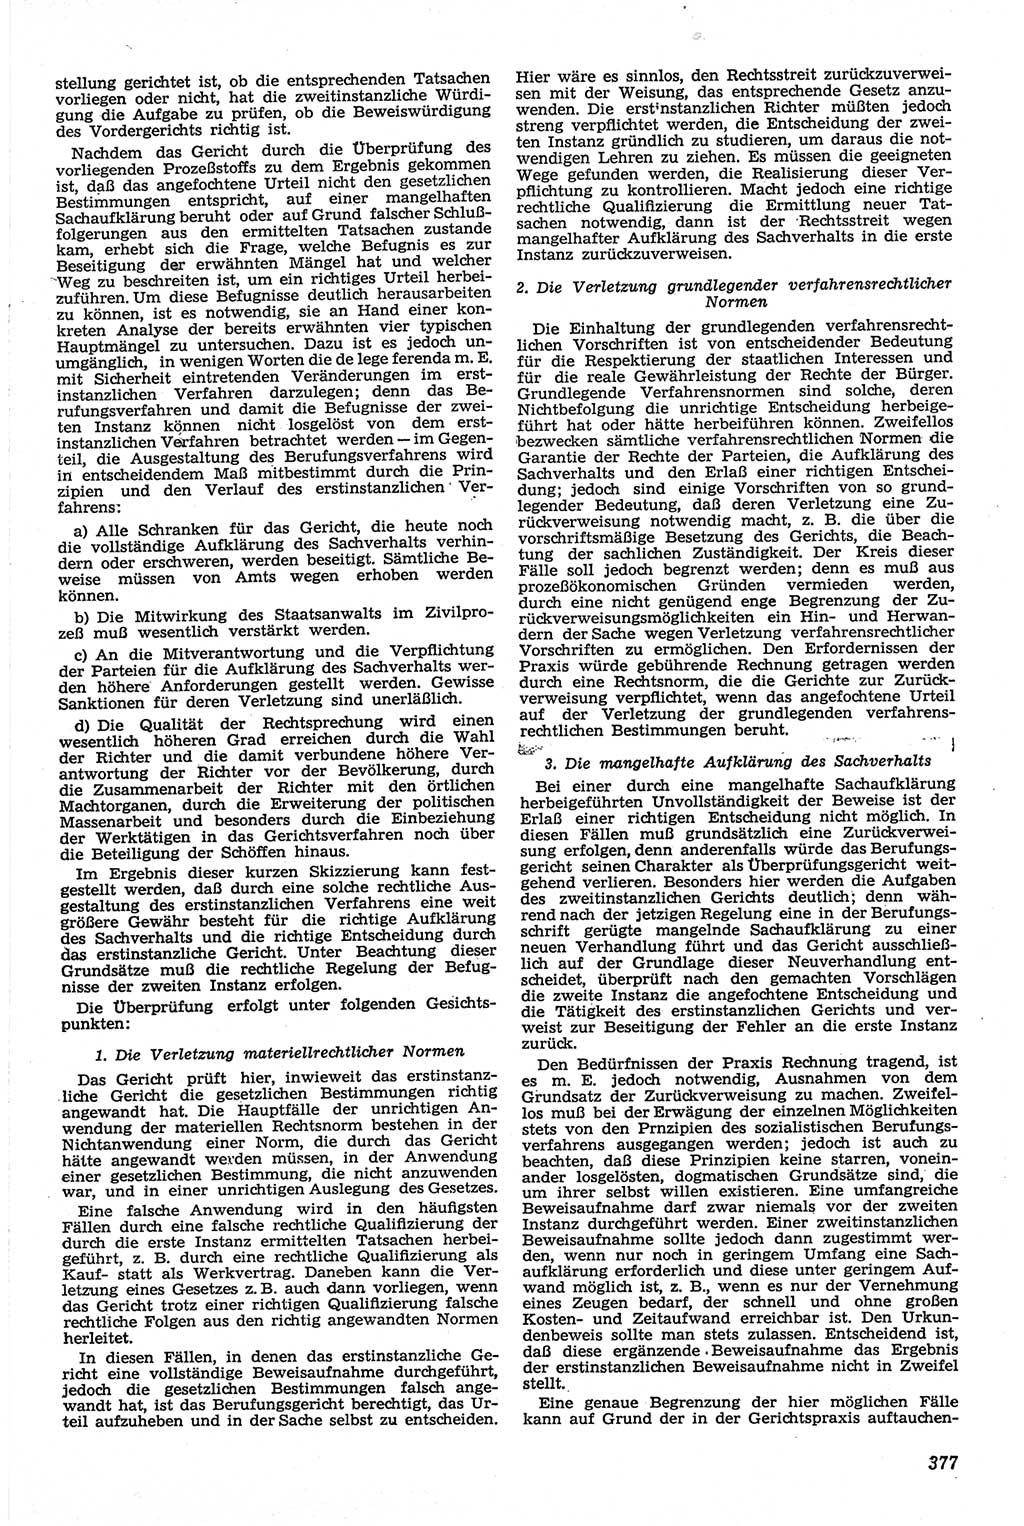 Neue Justiz (NJ), Zeitschrift für Recht und Rechtswissenschaft [Deutsche Demokratische Republik (DDR)], 13. Jahrgang 1959, Seite 377 (NJ DDR 1959, S. 377)